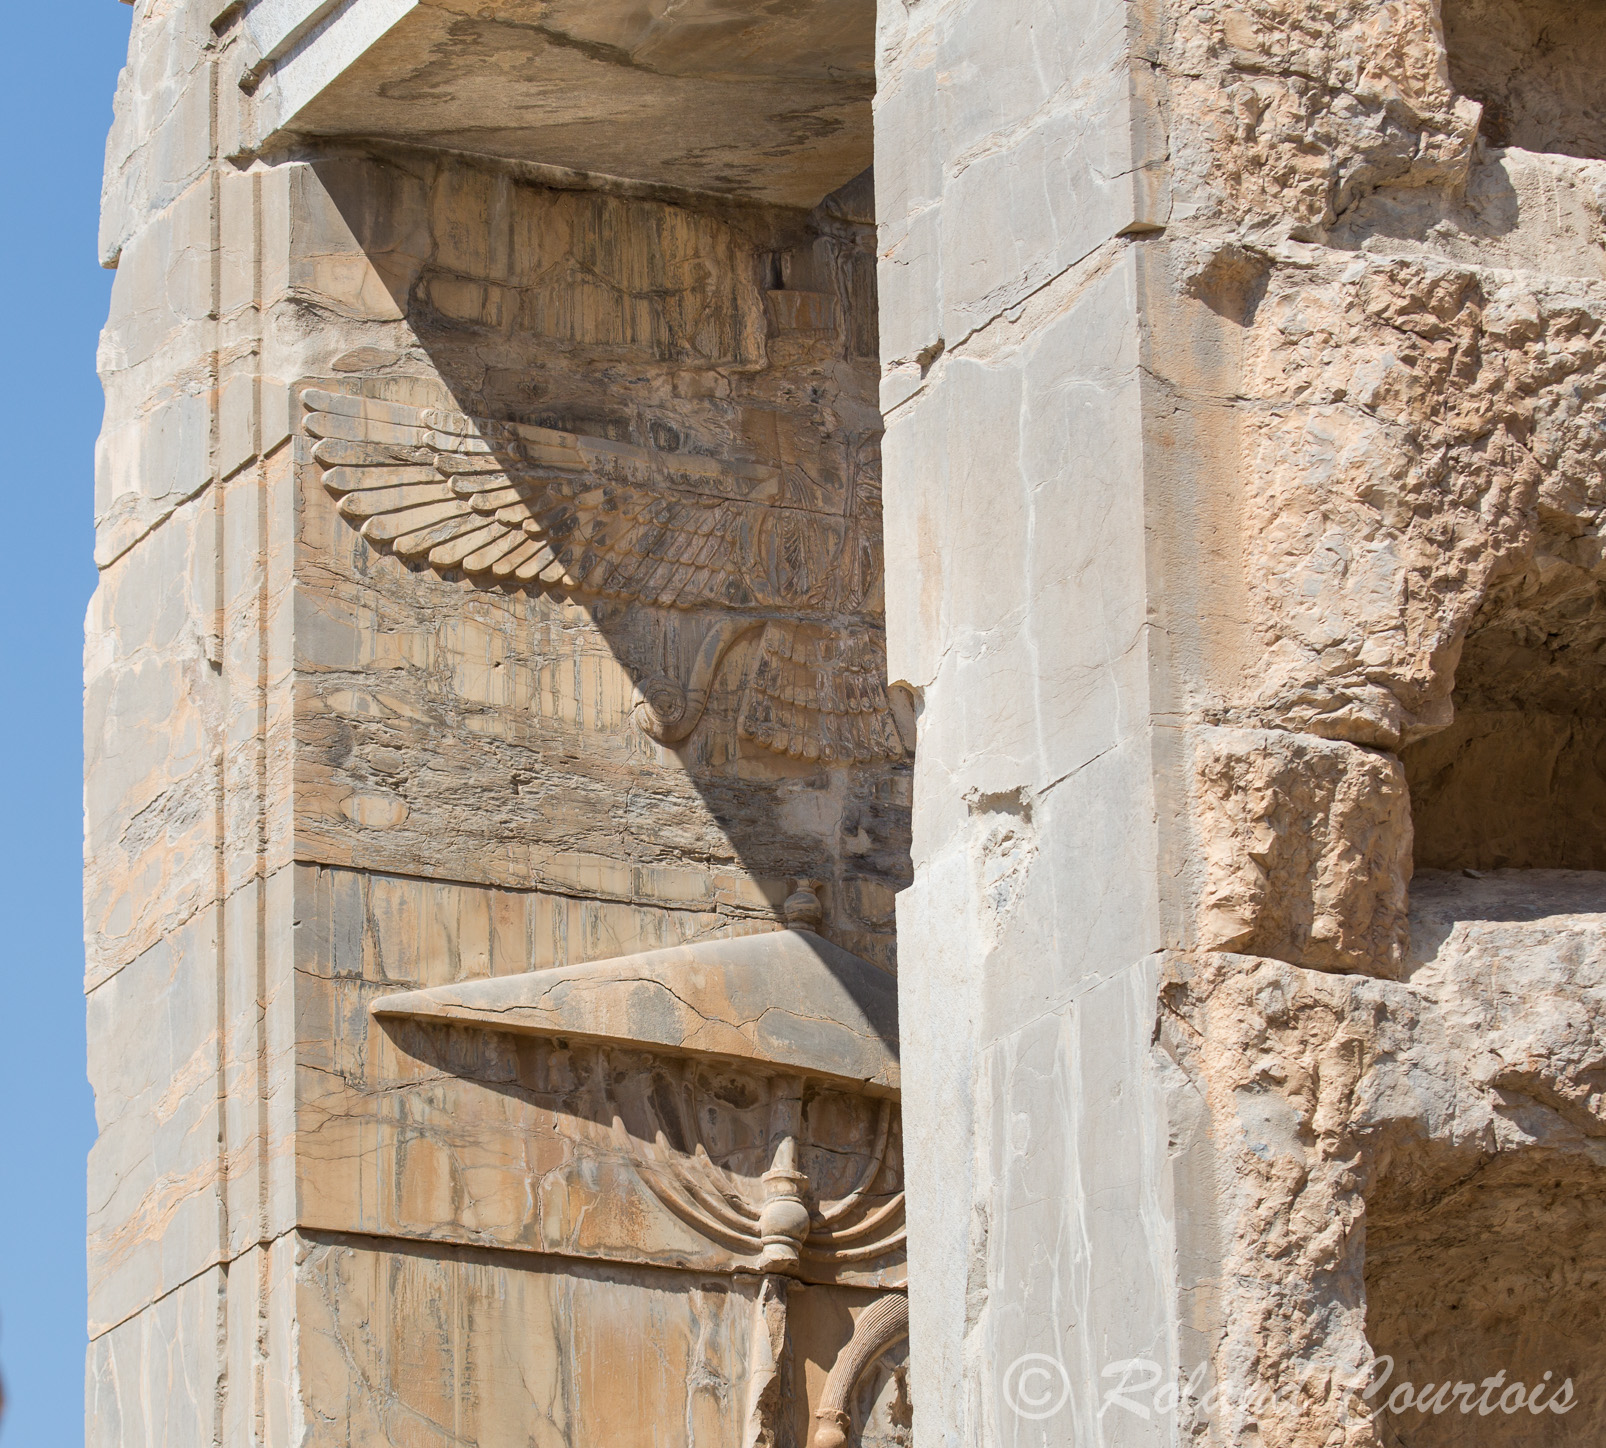 Persepolis : Palais de Xerxès, ce disque ailé serait une représentation de Ahura Mazda, divinité principale des Perses.